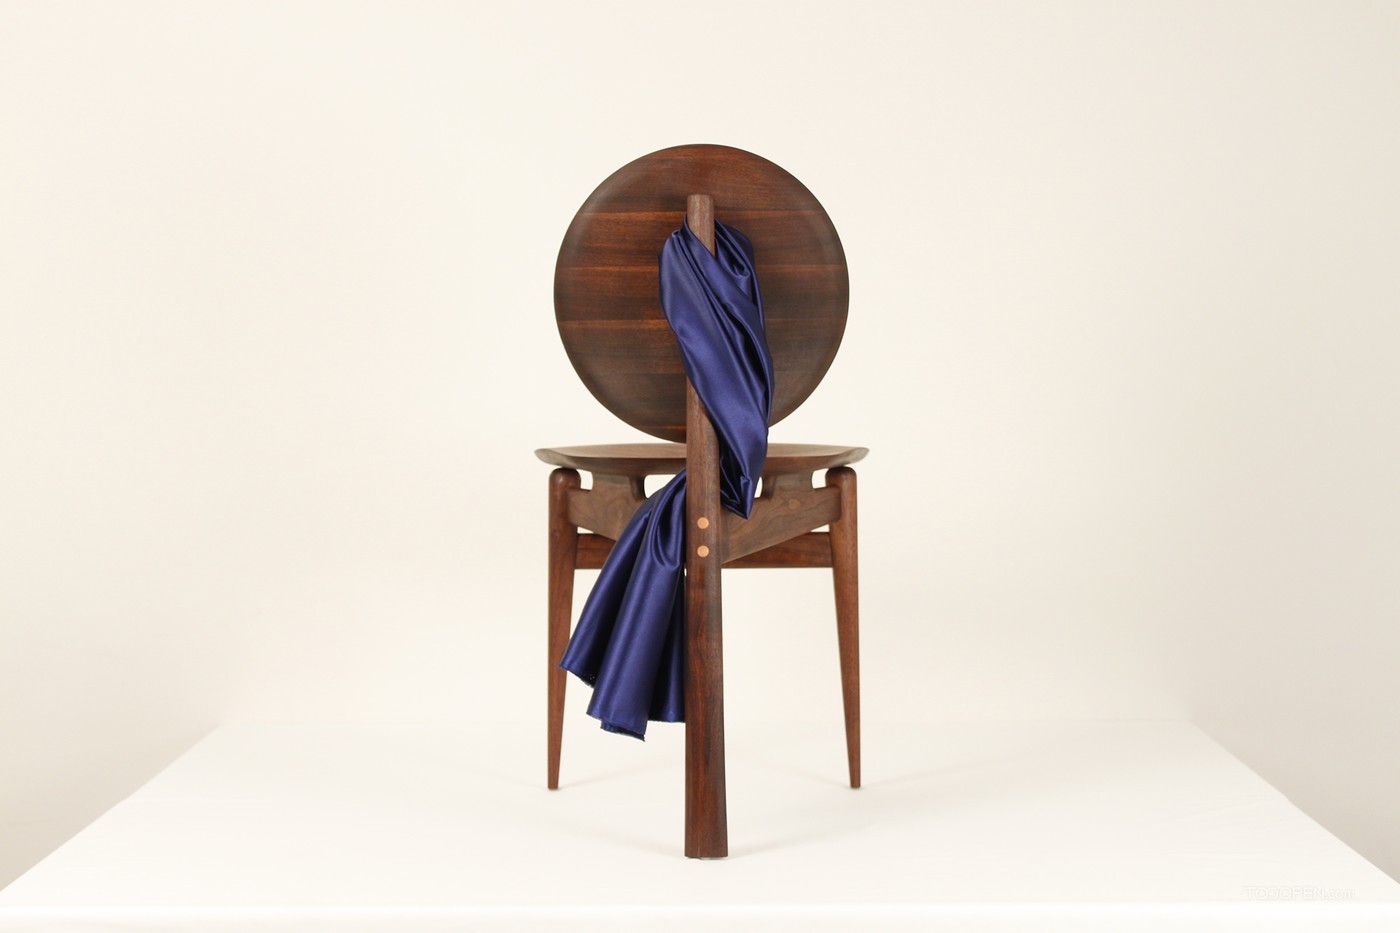 国外创意胡桃木椅家具产品设计欣赏-07